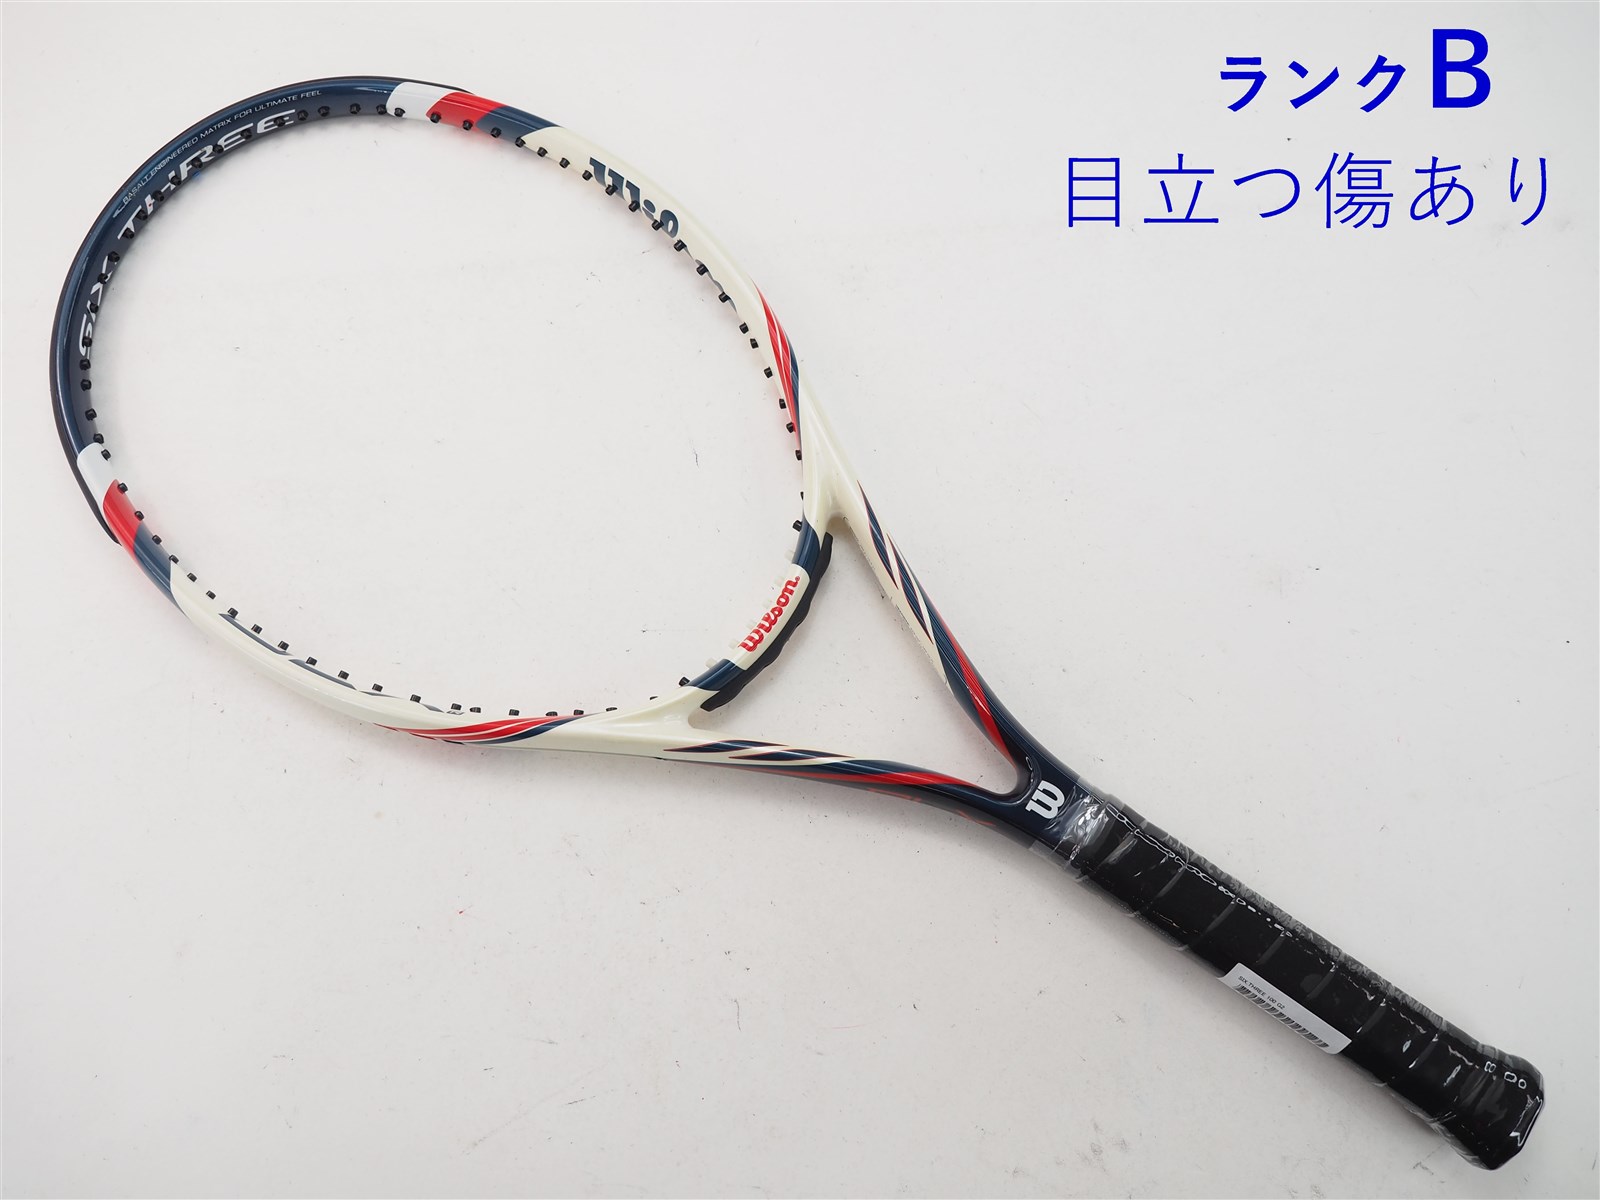 テニスラケット ウィルソン ケー シックス ツー 100 (G2)WILSON K SIX. TWO 100元グリップ交換済み付属品